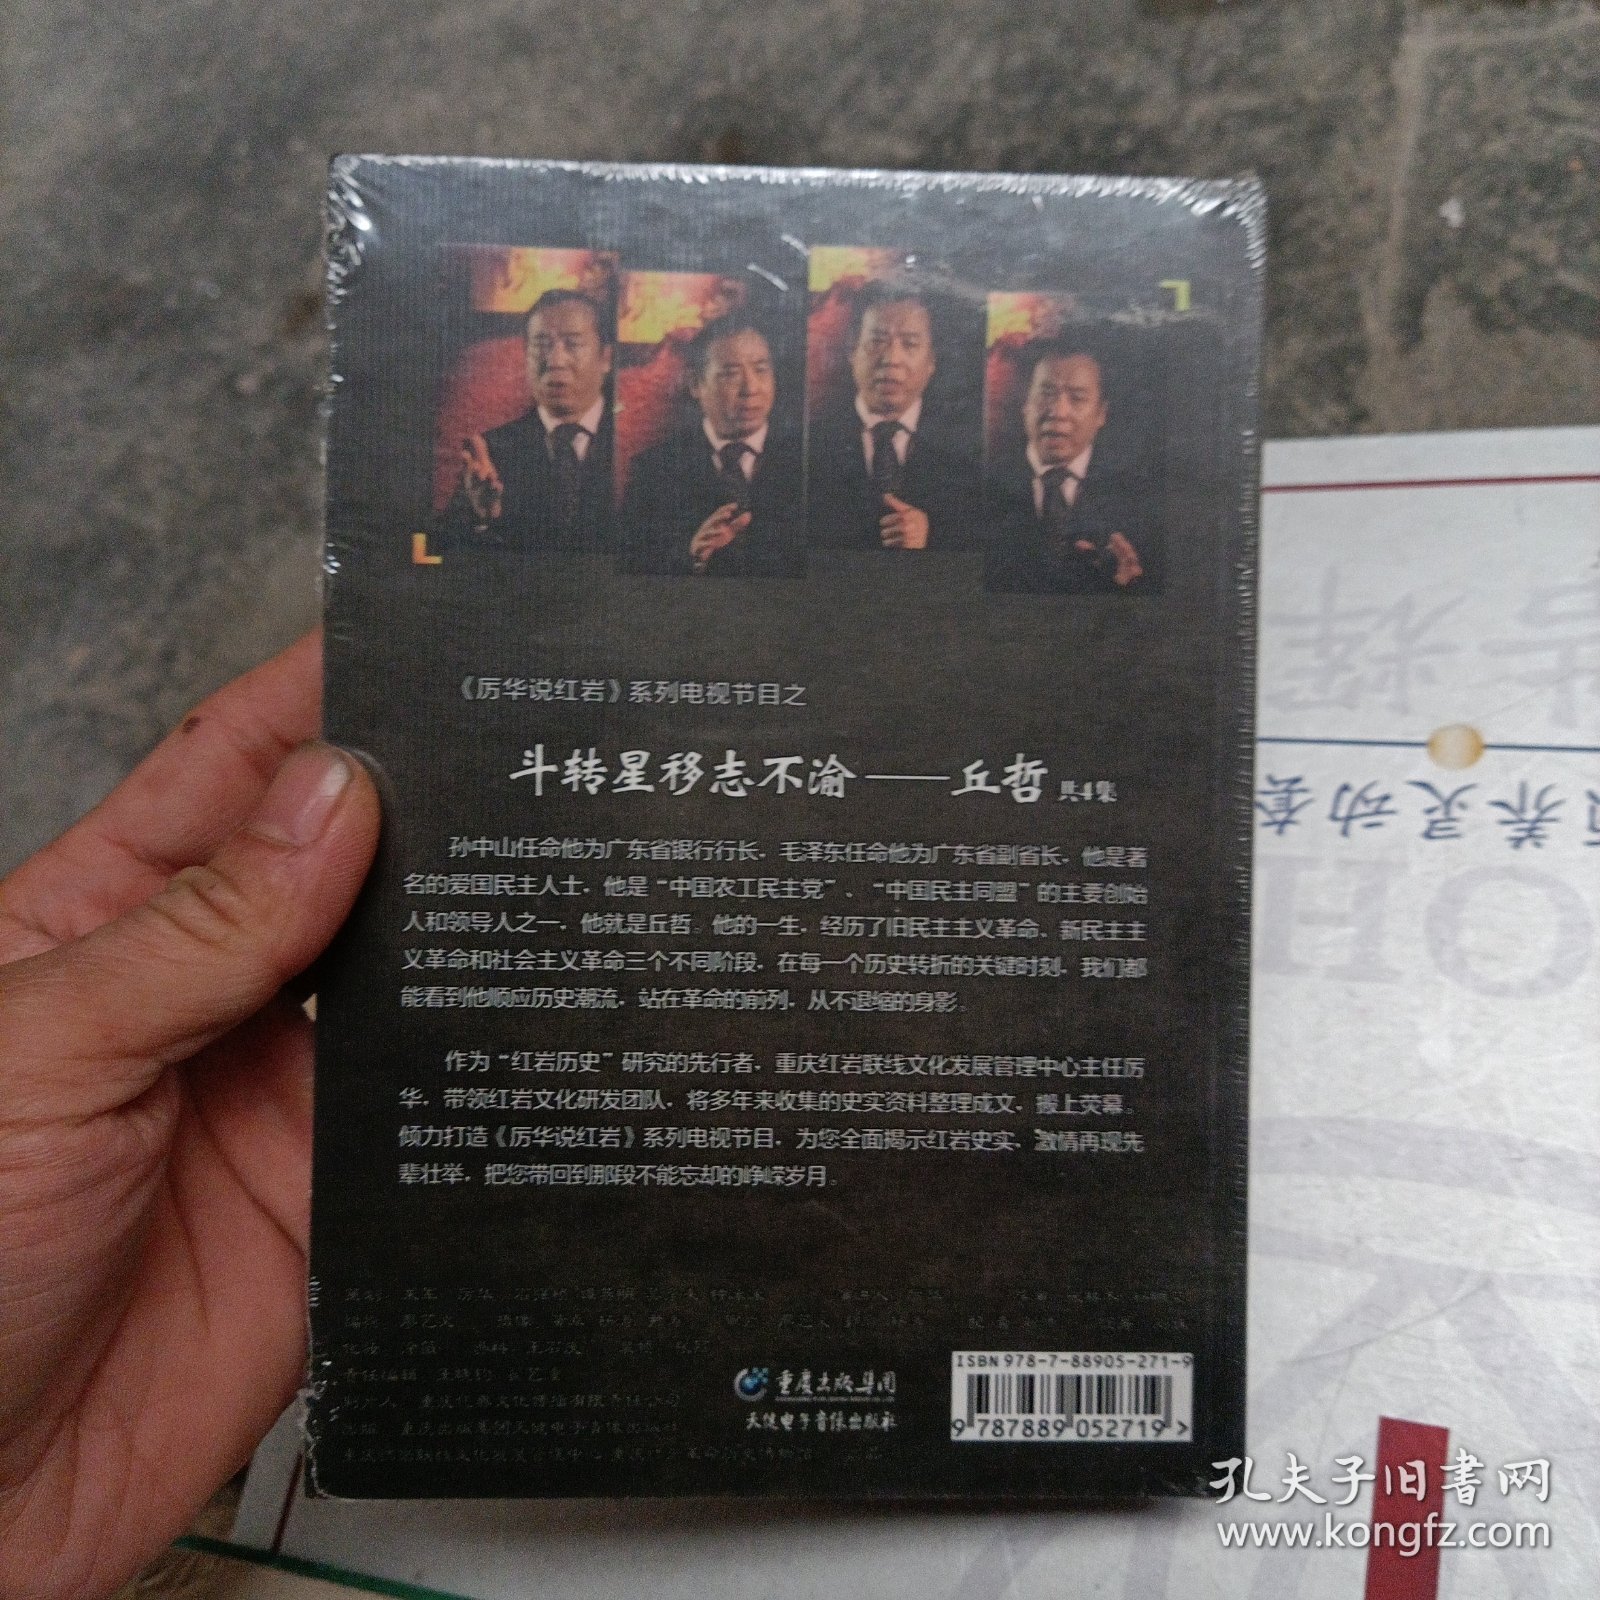 DVD. 厉华说红岩系列电视节目《斗转星移志不渝丘哲》共4集